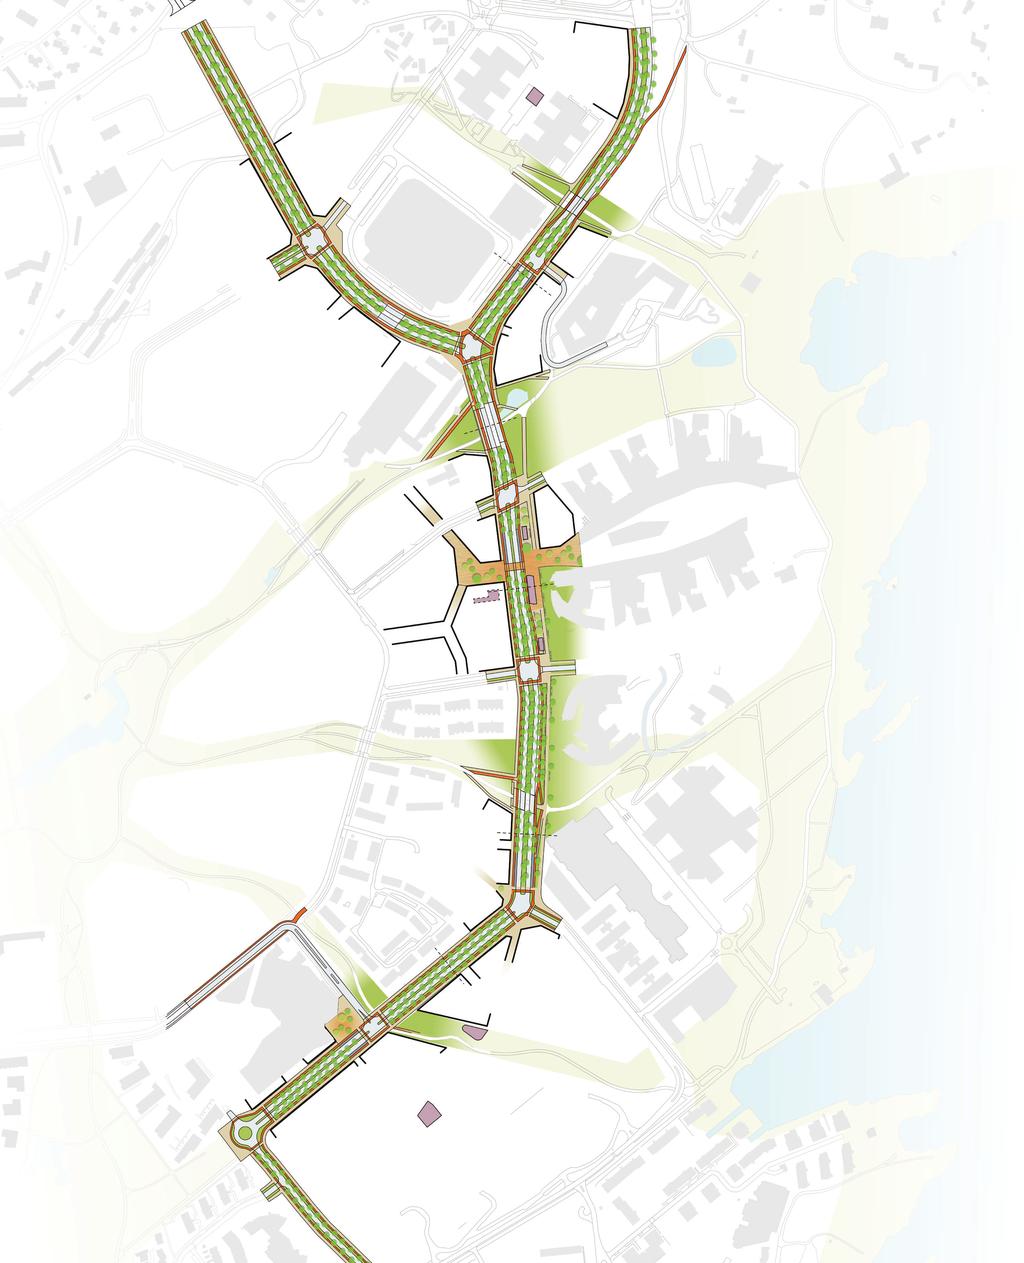 Kapasitet veinettet Forslag til veisystem i revisjon av kommunedelplanen innebærer at det blir redusert antall felt for privatbiler på Snarøyveien.